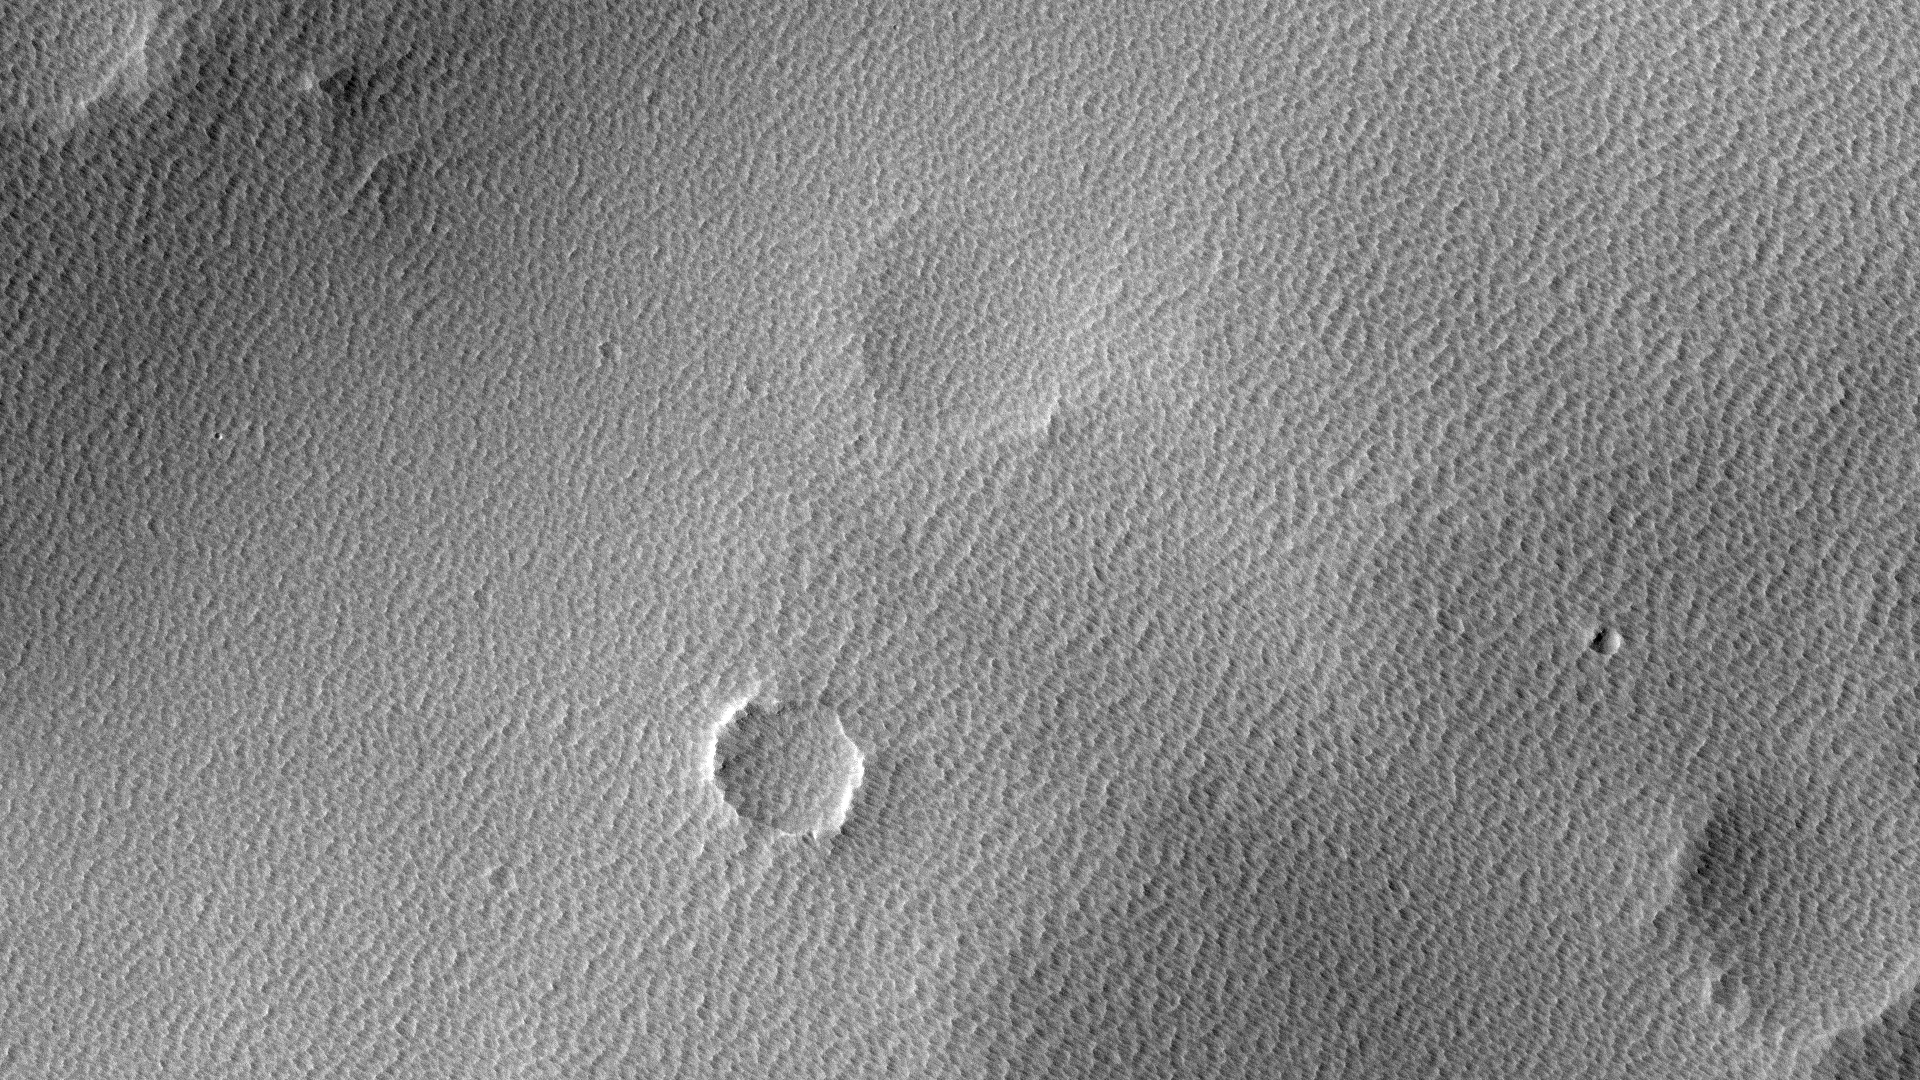 Кусочек Марса: всепоглощающая пыль